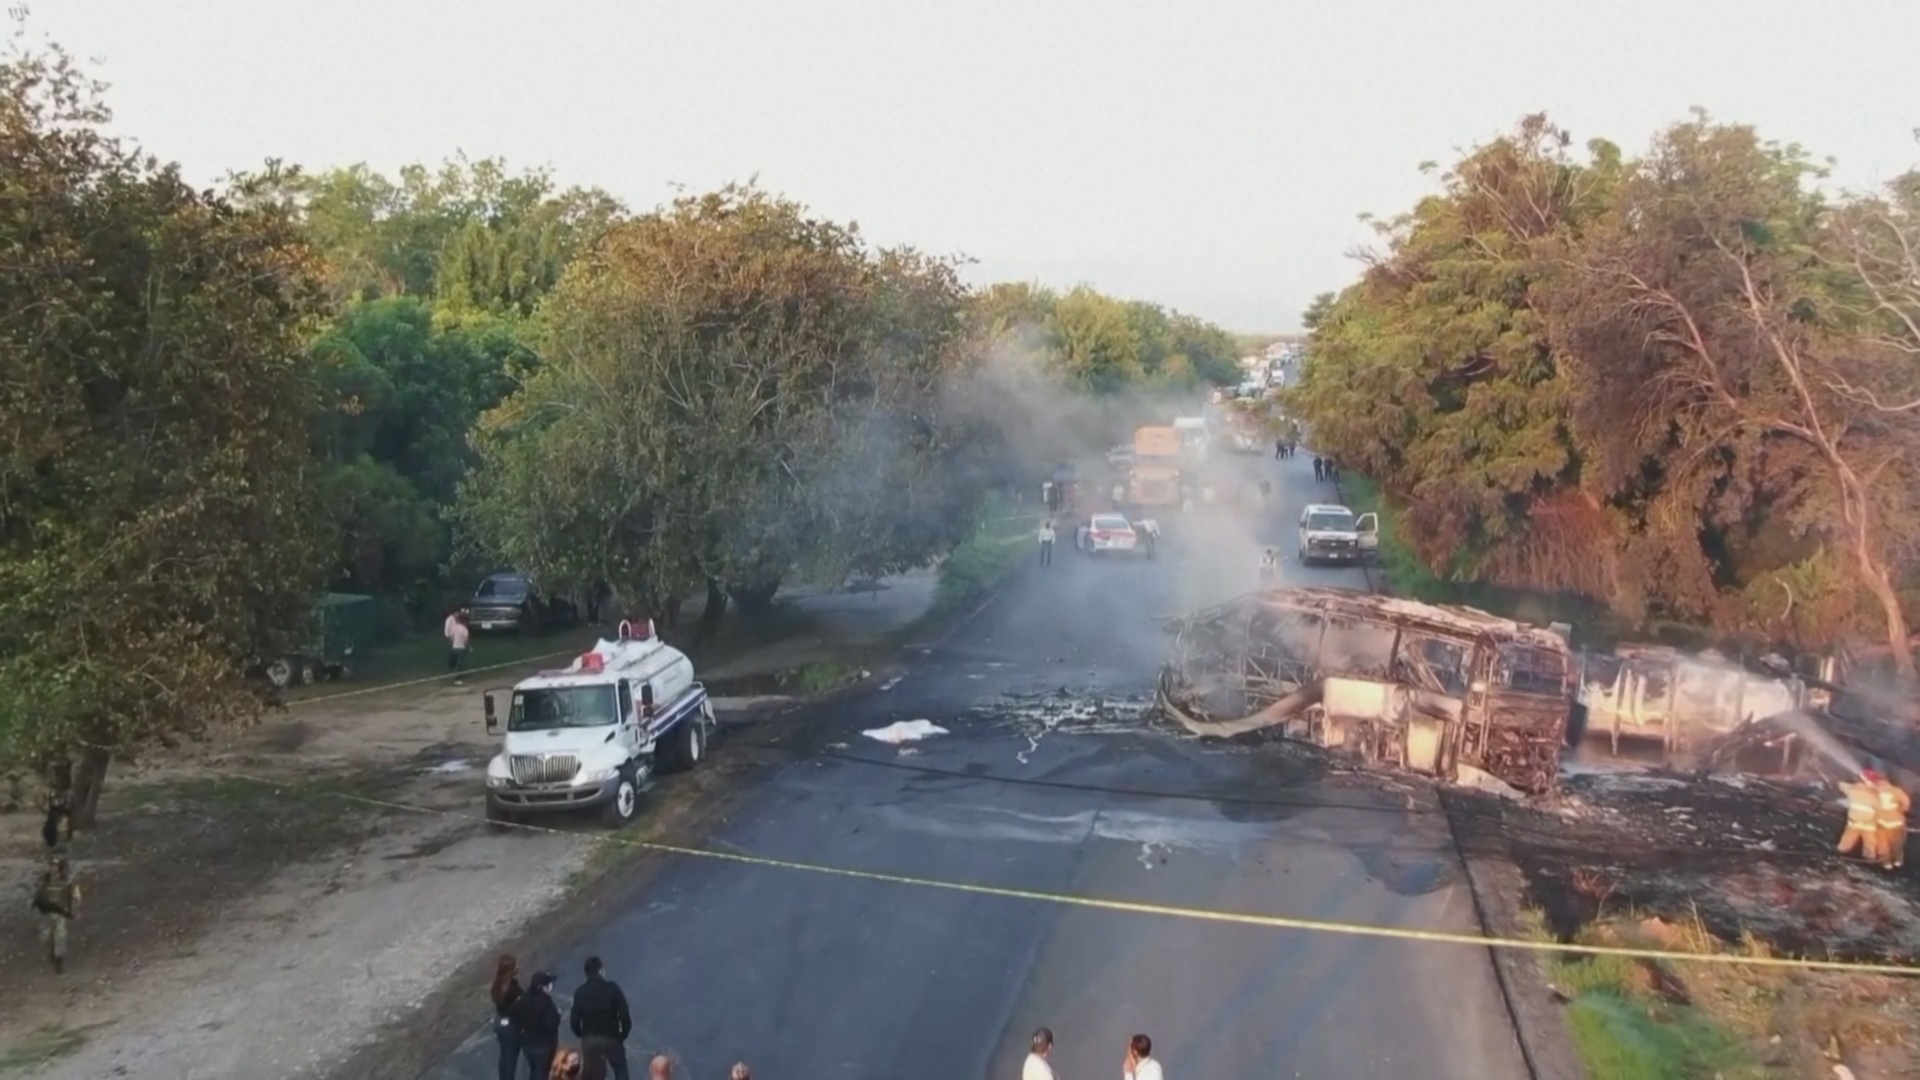 ДТП с участием автобуса в Мексике: 18 погибших